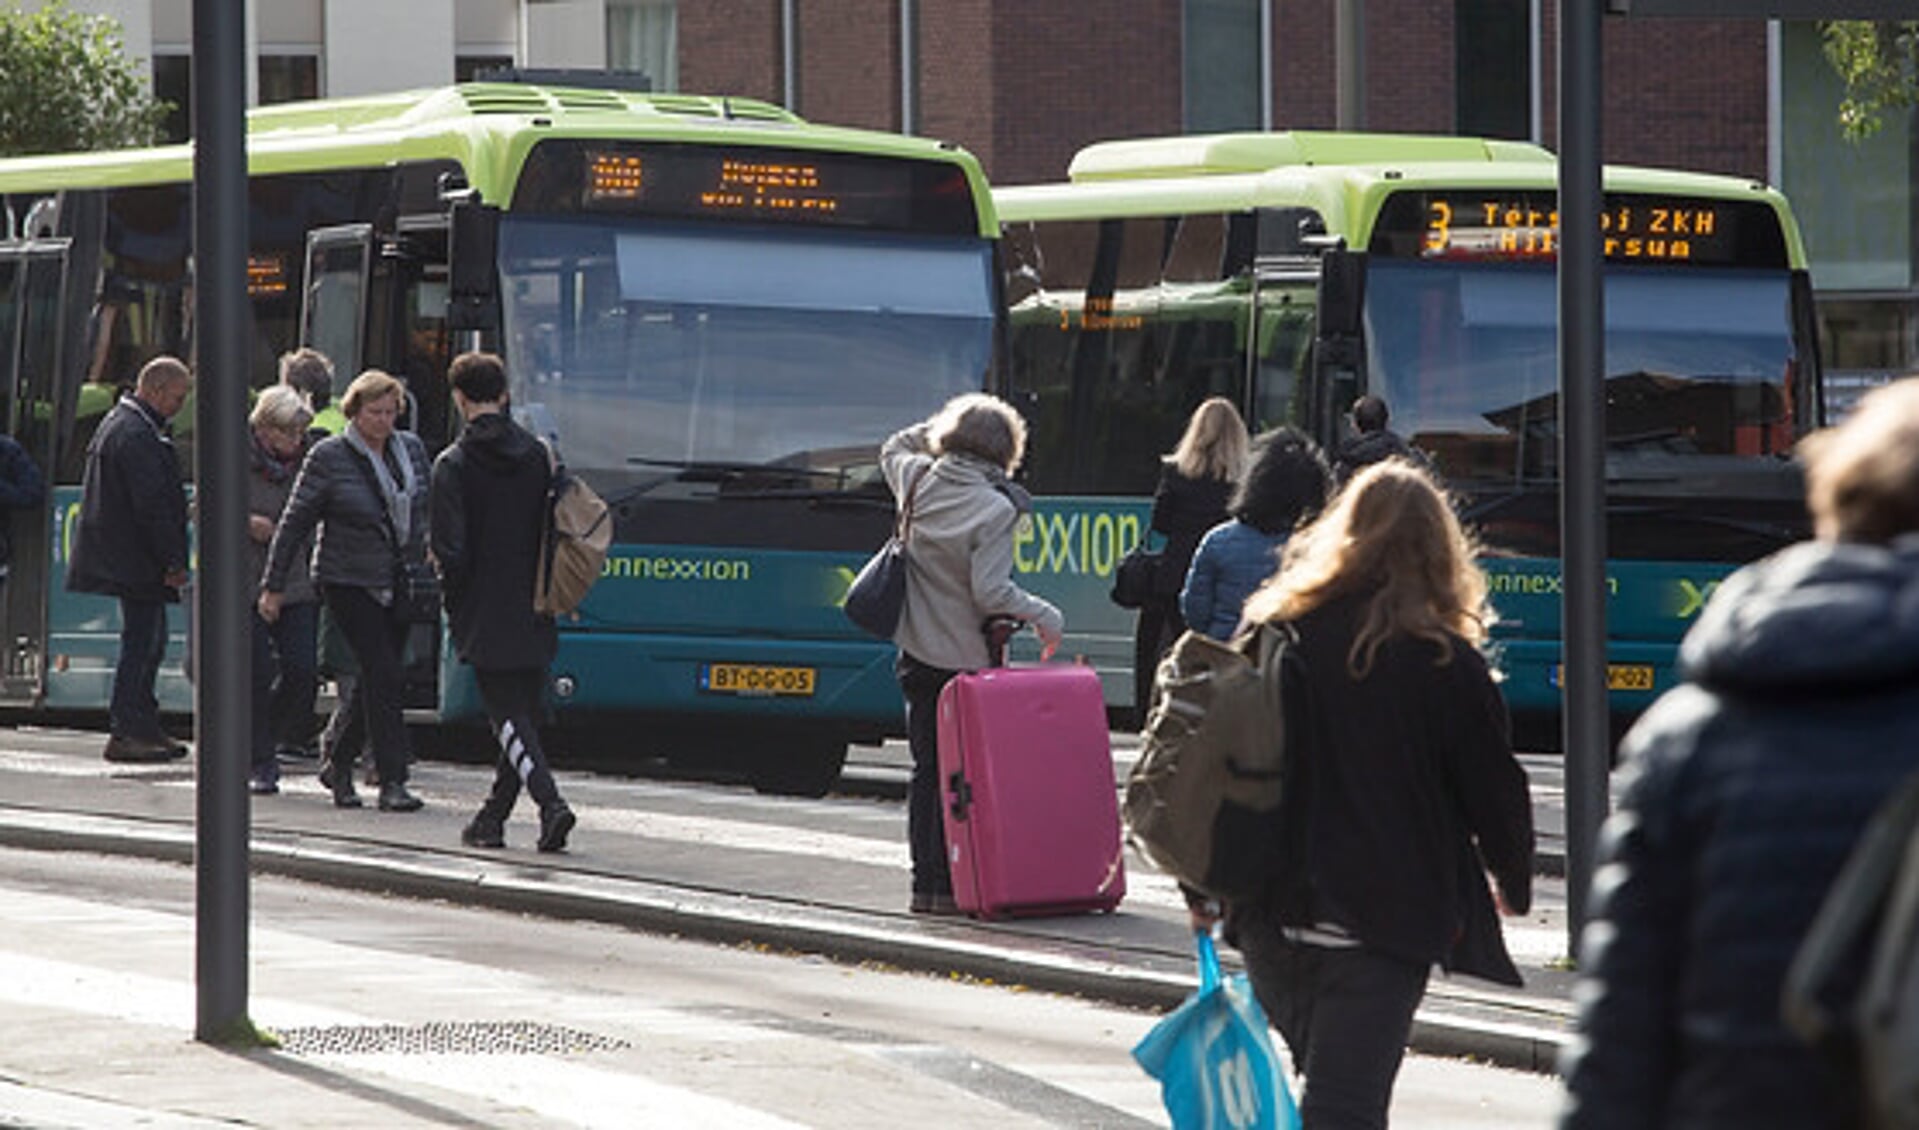 Kwaliteit van het busvervoer is in 2018 verbeterd.